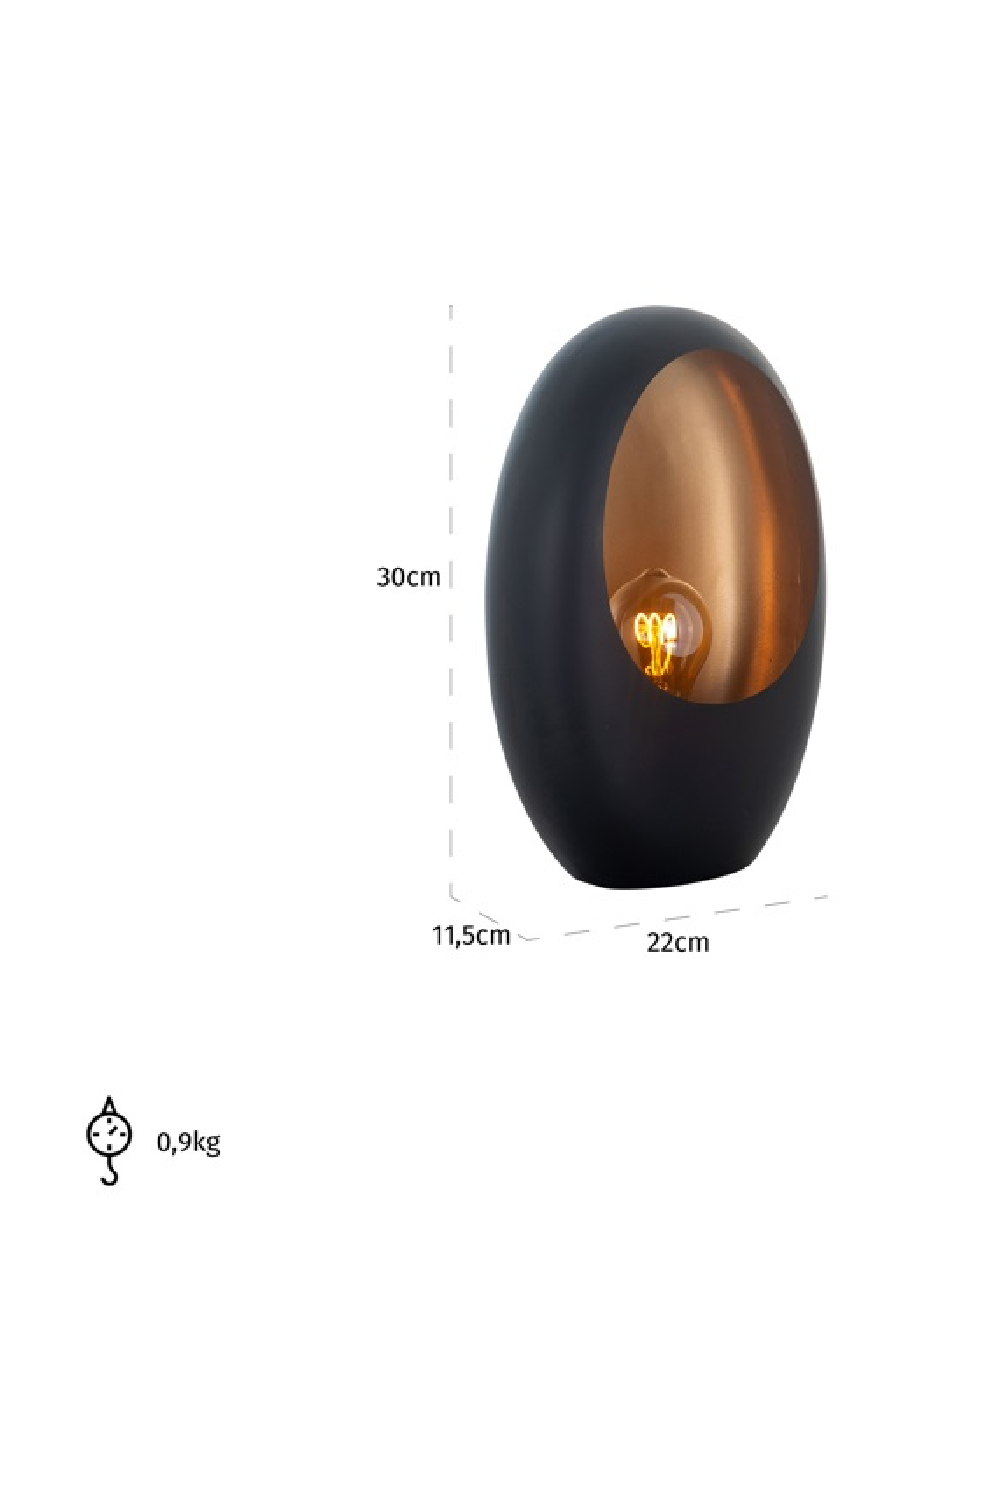 Black Ovoid Table Lamp S | OROA Lina | Oroa.com